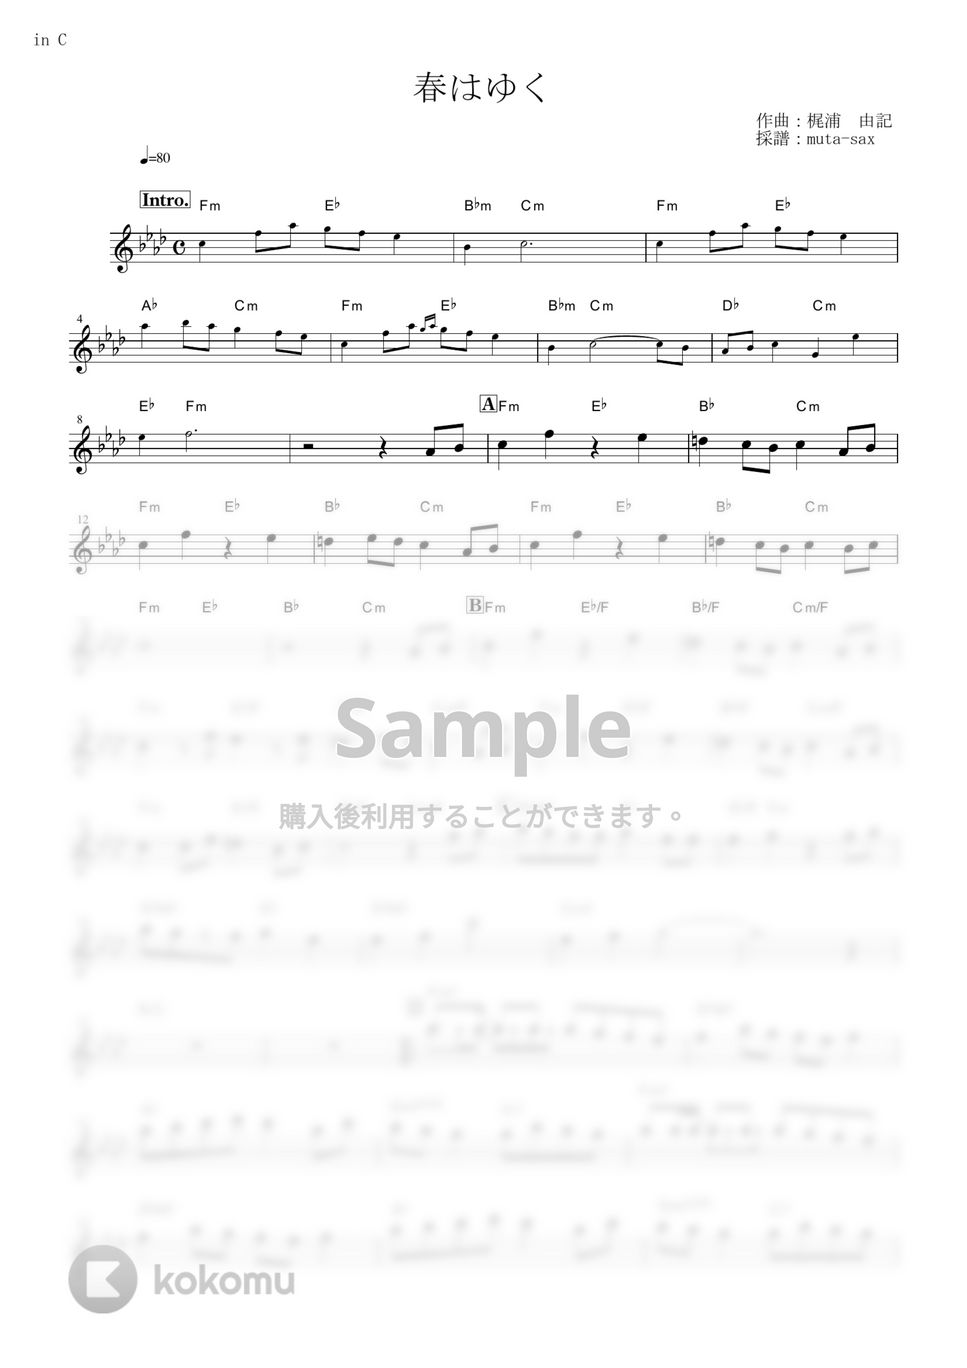 劇場版「Fate/stay night [Heaven's Feel]」III.spring song - 春はゆく【in C】 by muta-sax